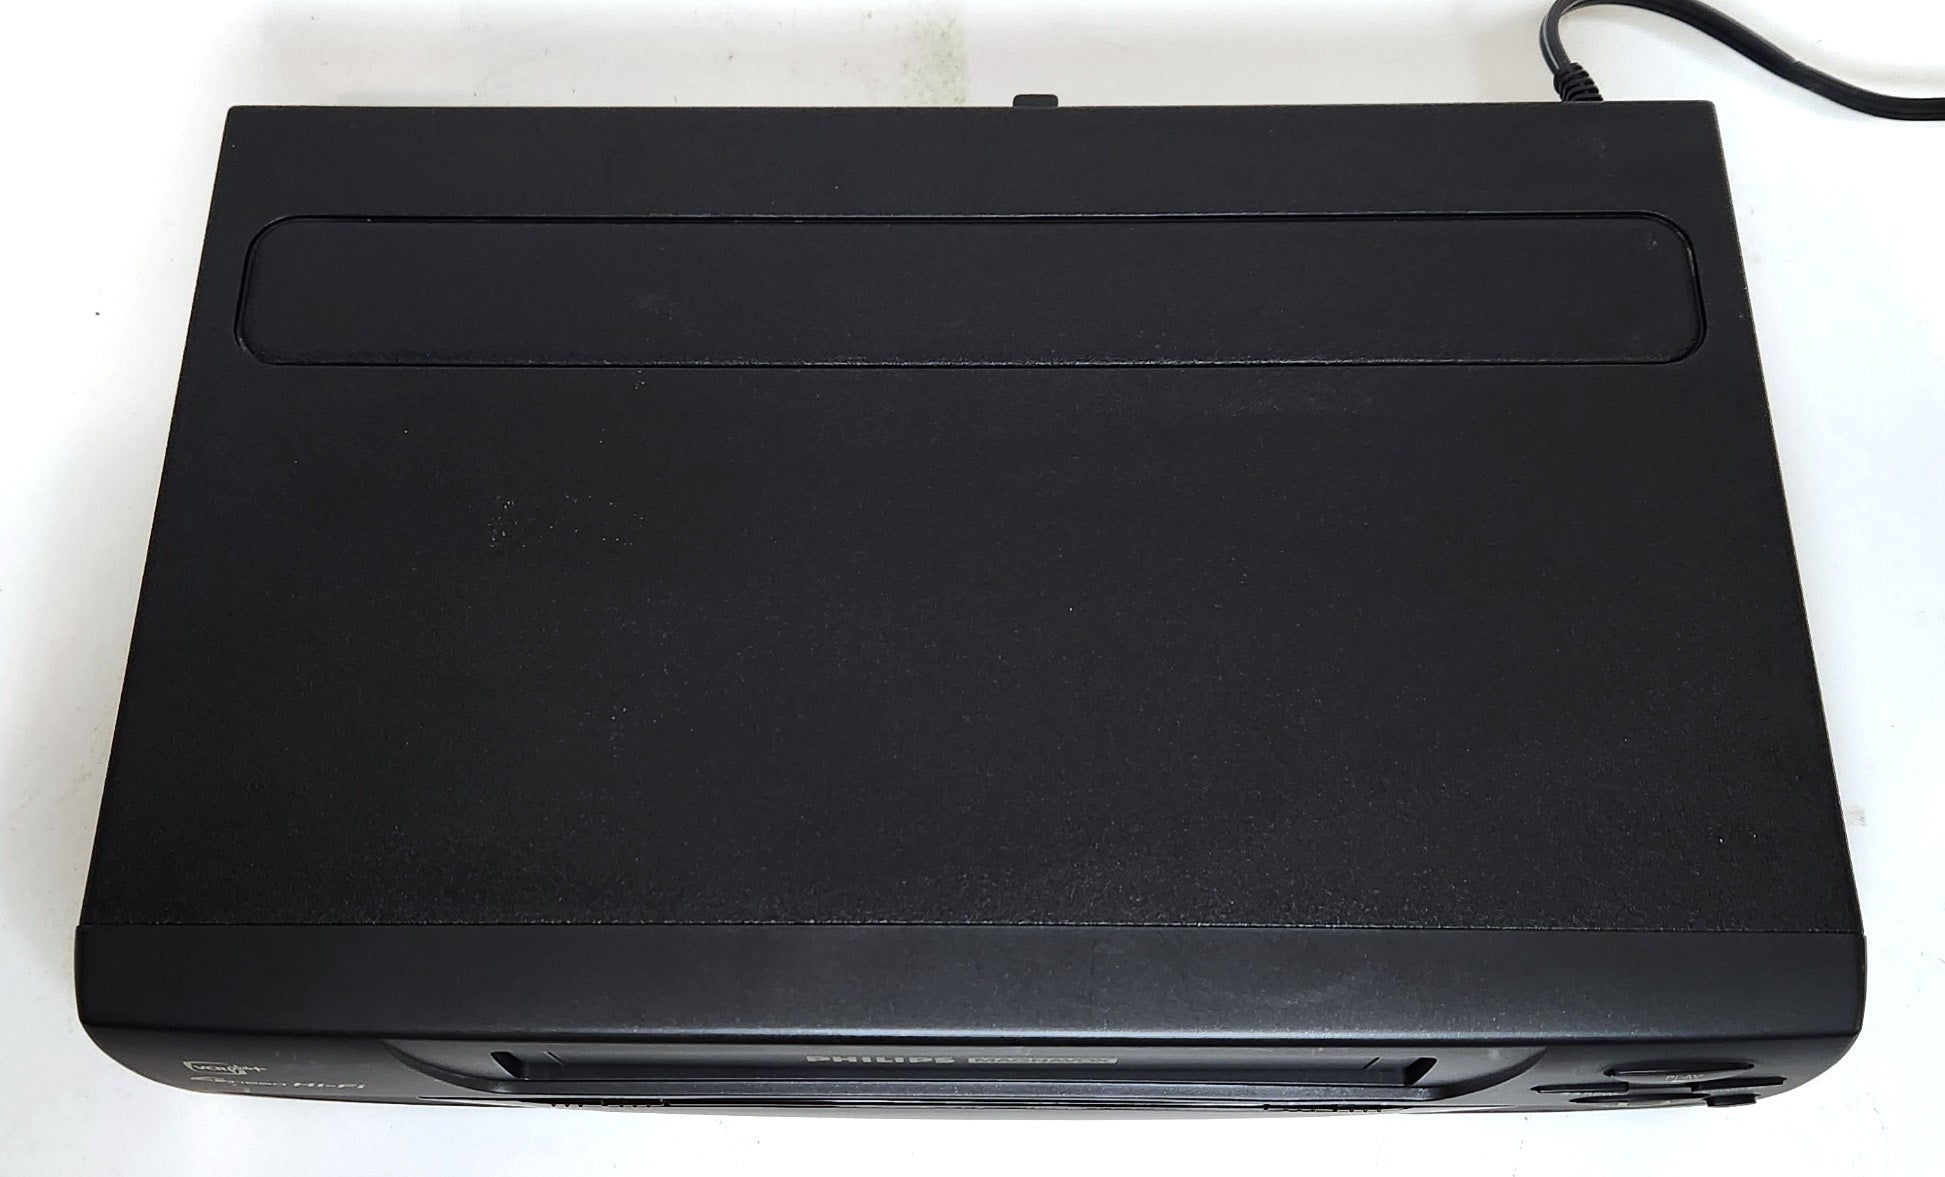 Philips Magnavox VRX260AT VCR, 4-Head Hi-Fi Stereo - Top